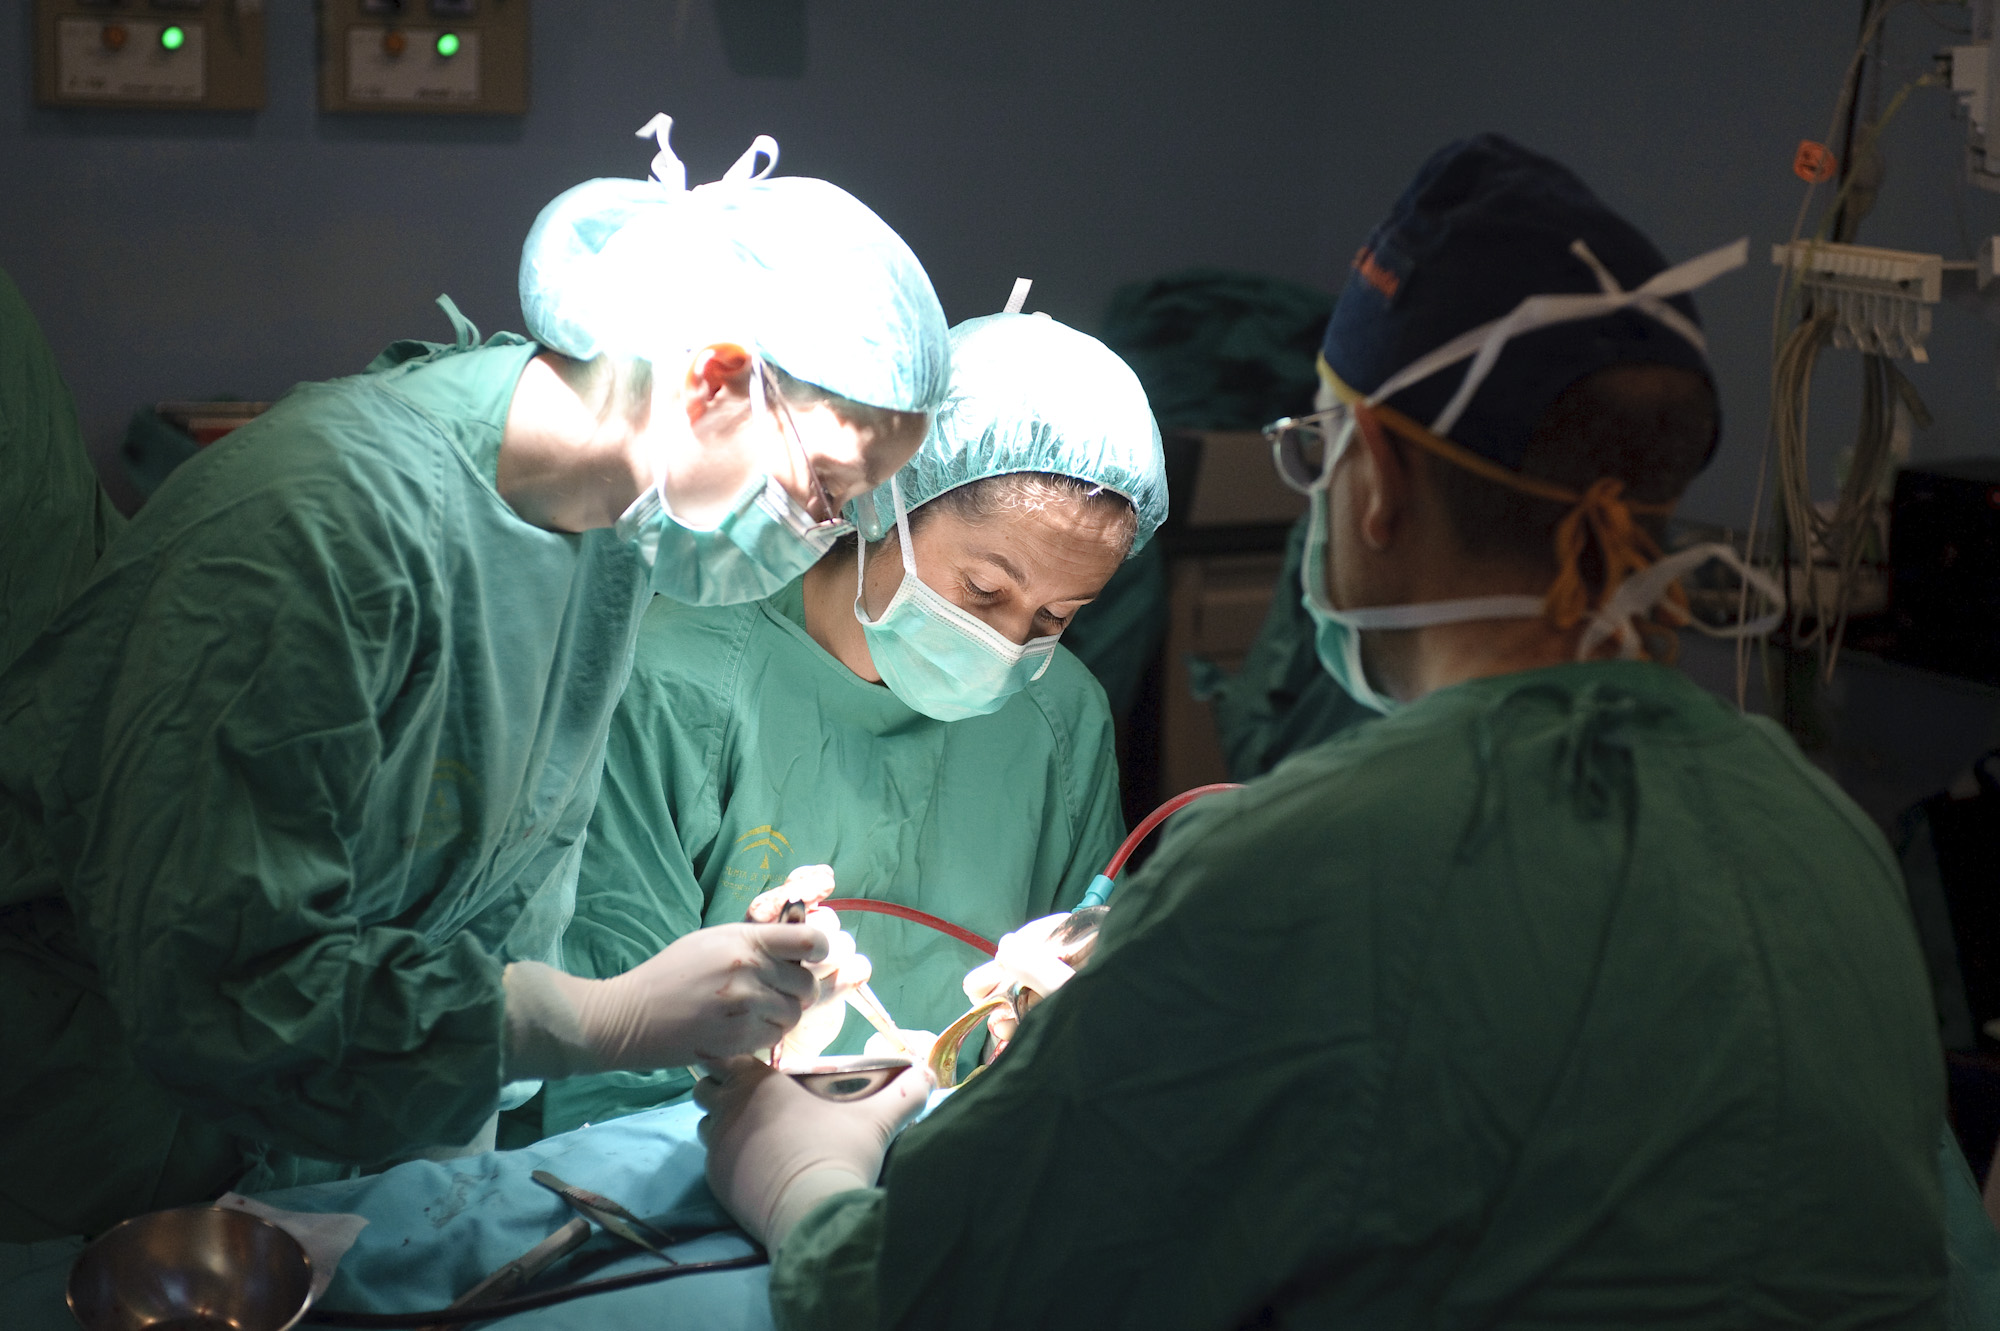 El SAS debe indemnizar a un paciente tras la demora de una intervención quirúrgica «urgente»